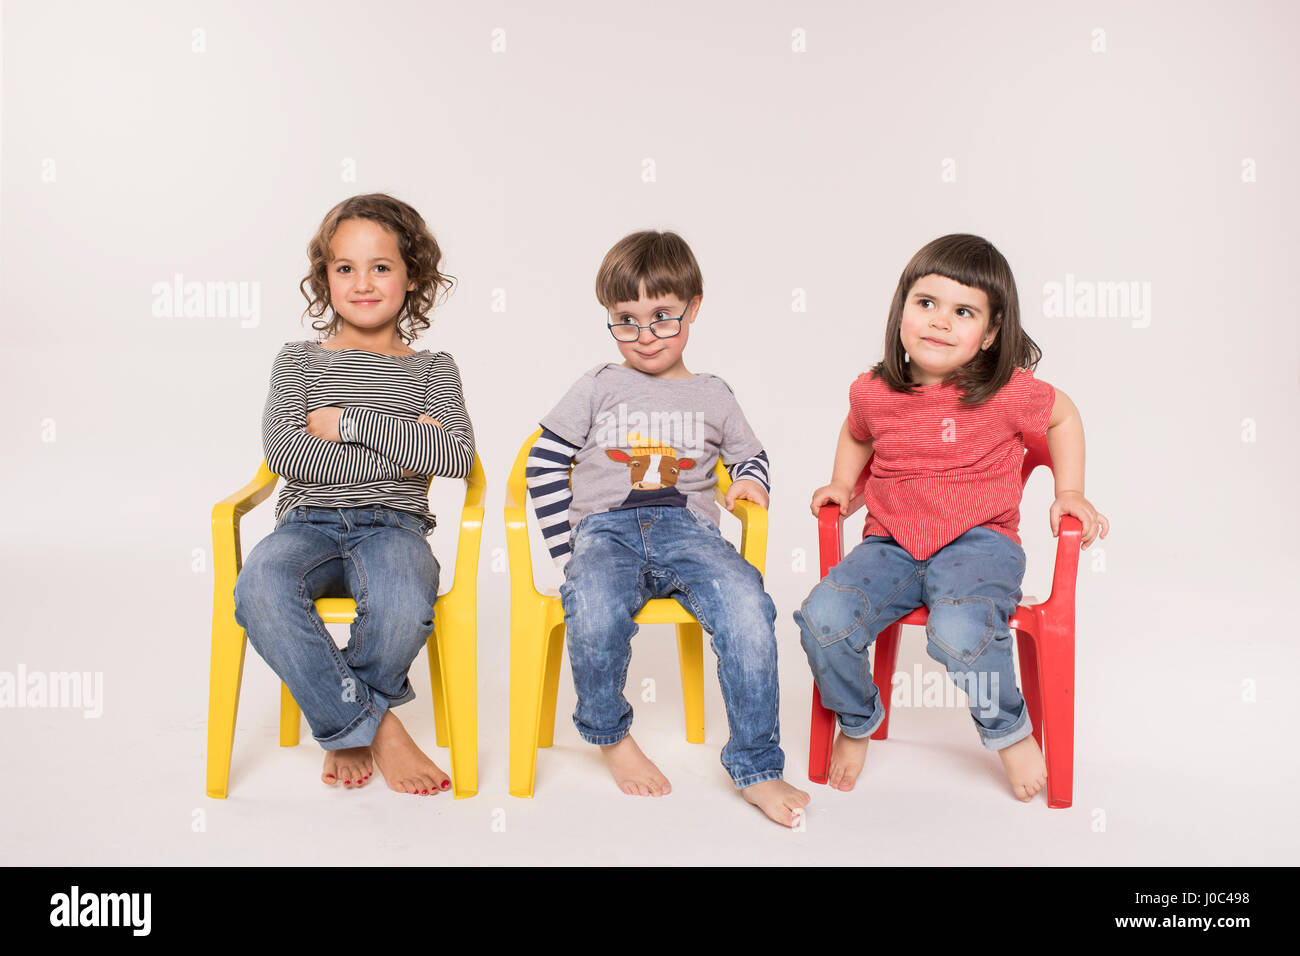 Portrait de trois enfants assis sur des chaises colorées, studio shot Banque D'Images